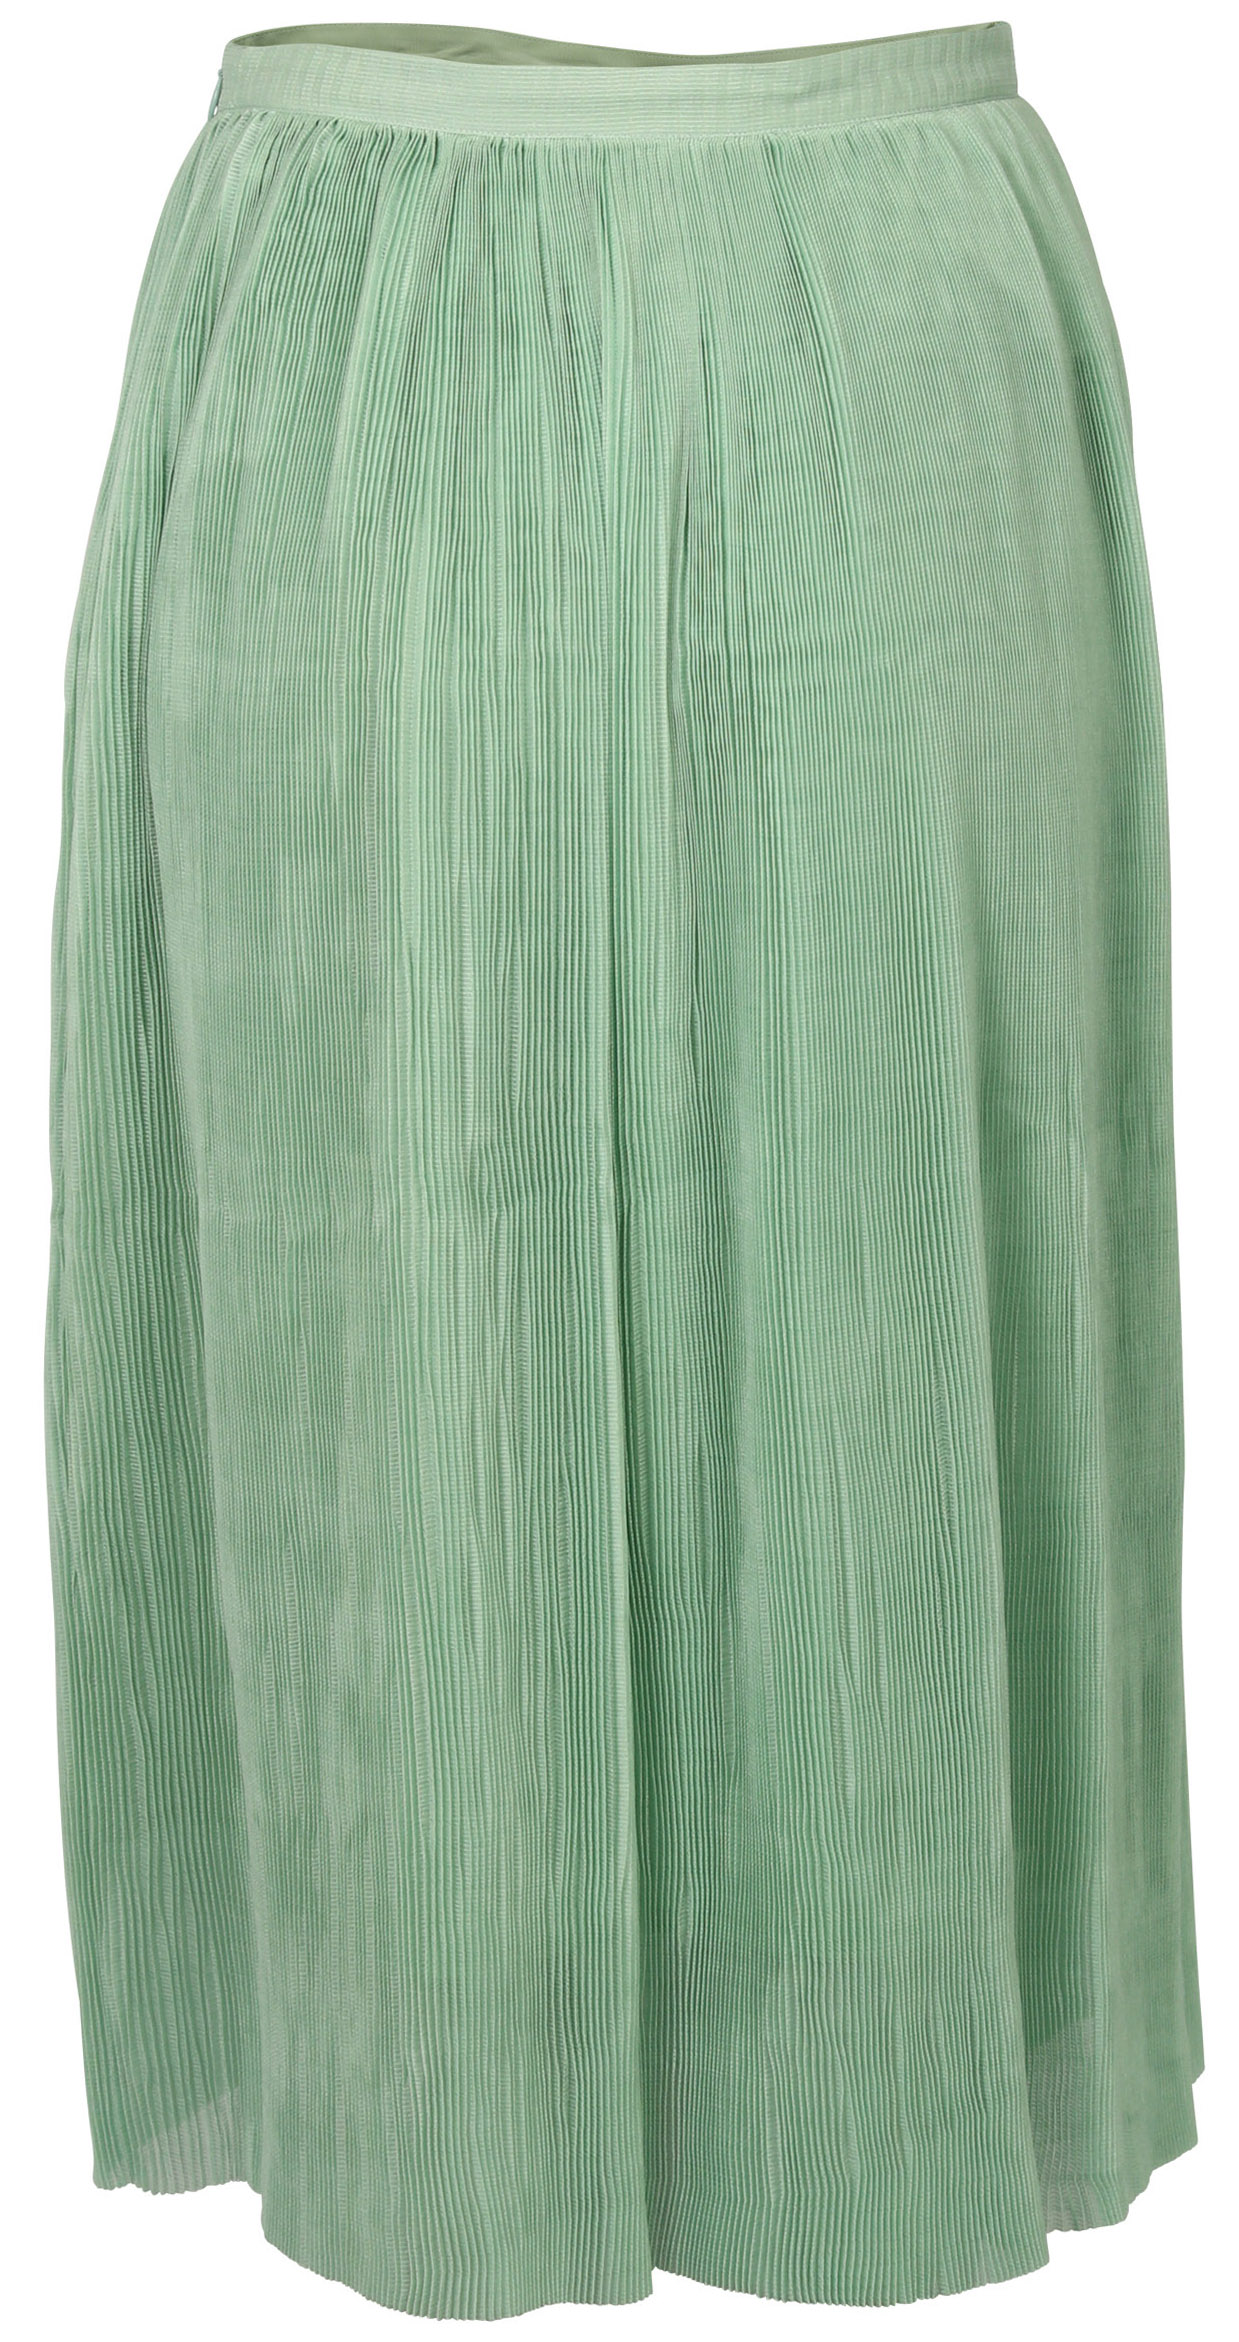 FWSS Skirt Thi Jade Green